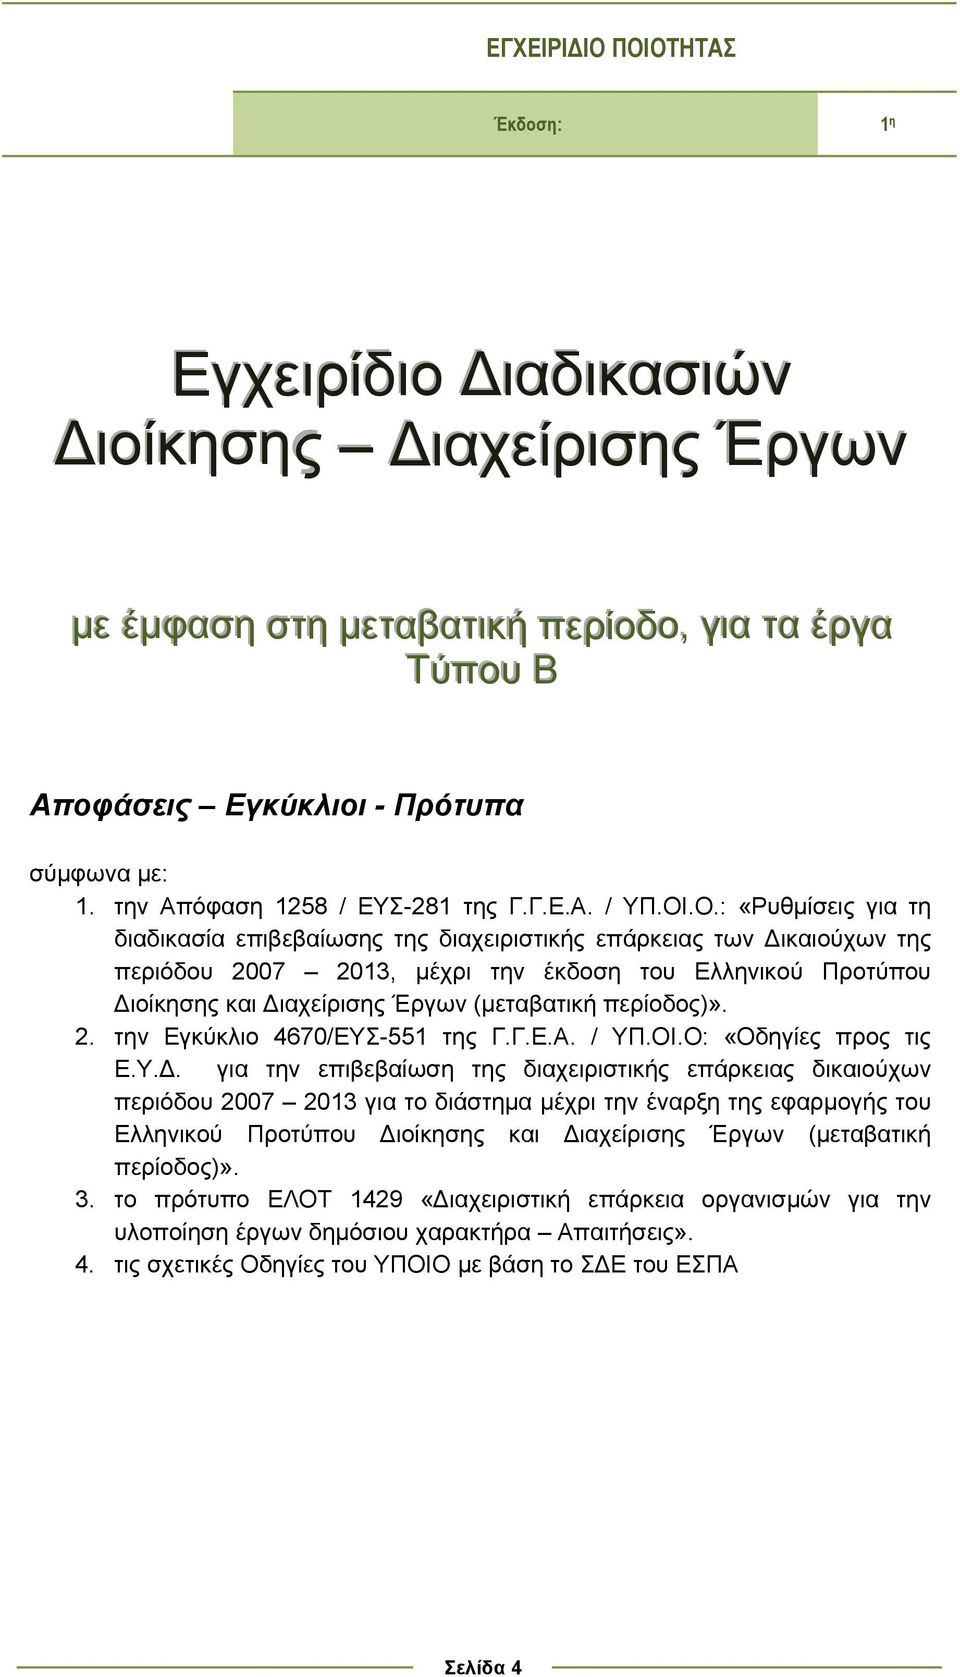 .Ο.: «Ρυθμίσεις για τη διαδικασία επιβεβαίωσης της διαχειριστικής επάρκειας των Δικαιούχων της περιόδου 2007 2013, μέχρι την έκδοση του Ελληνικού Προτύπου Διοίκησης και Διαχείρισης Έργων (μεταβατική